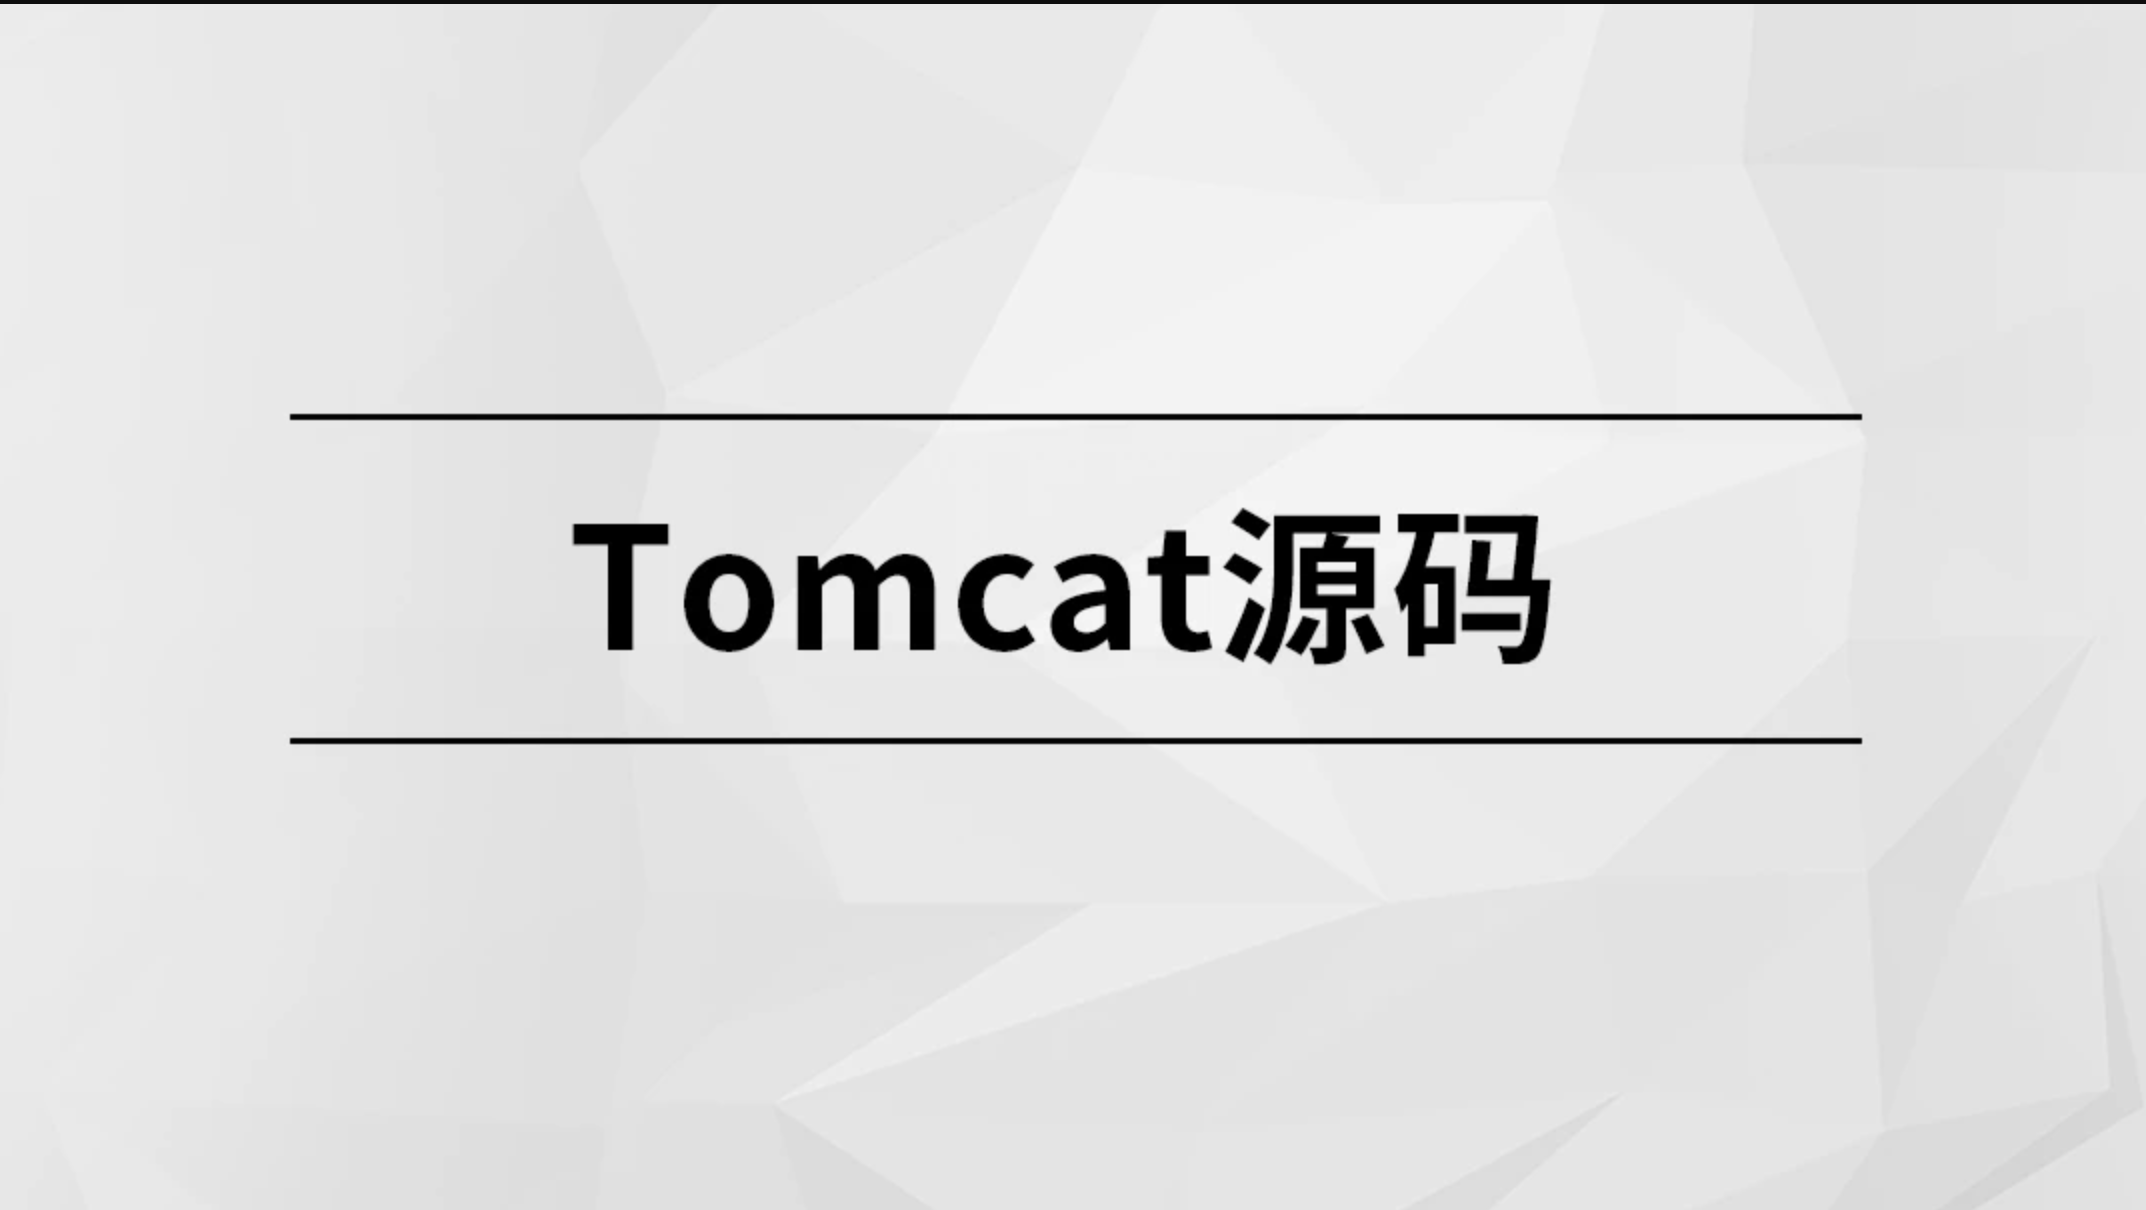 Tomcat源码【马士兵教育】